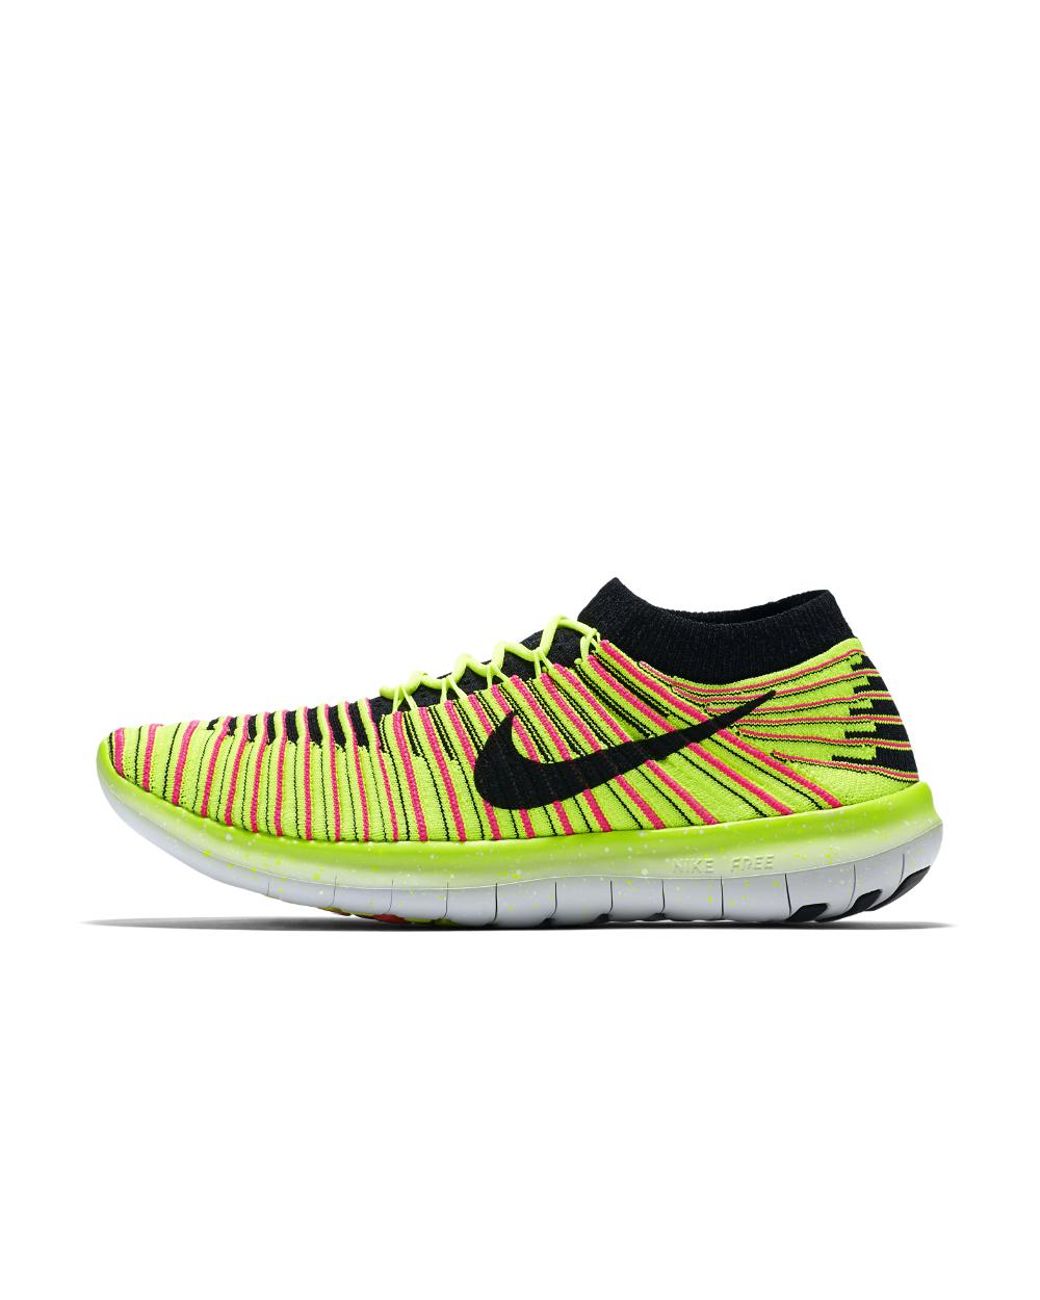 Nike Synthetic Free Rn Motion Flyknit Ultd Women's Running Shoe in Yellow |  Lyst